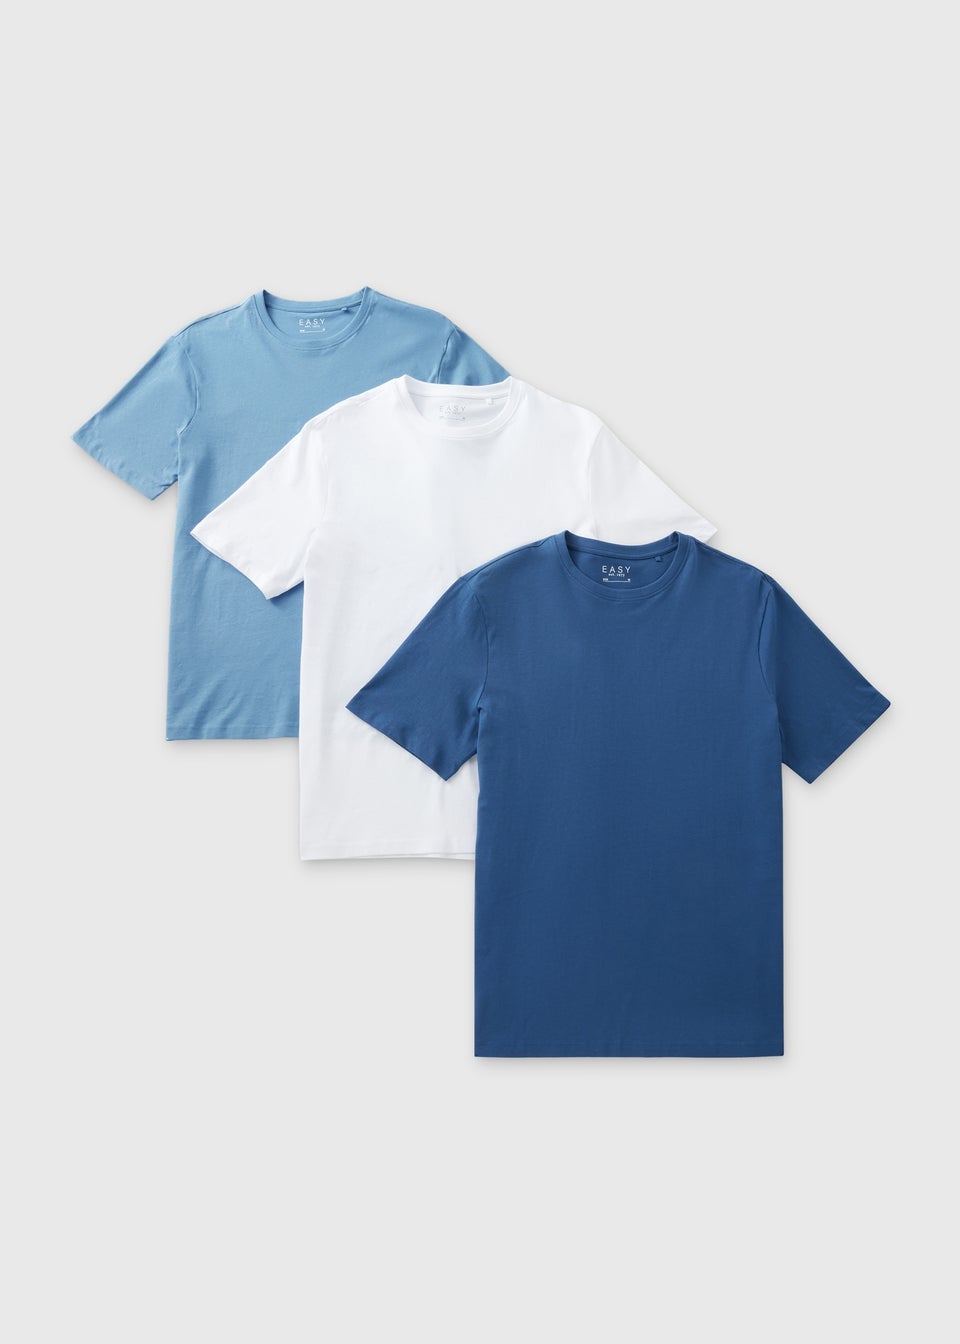 3 Pack Navy Blue & White Plain T-Shirt